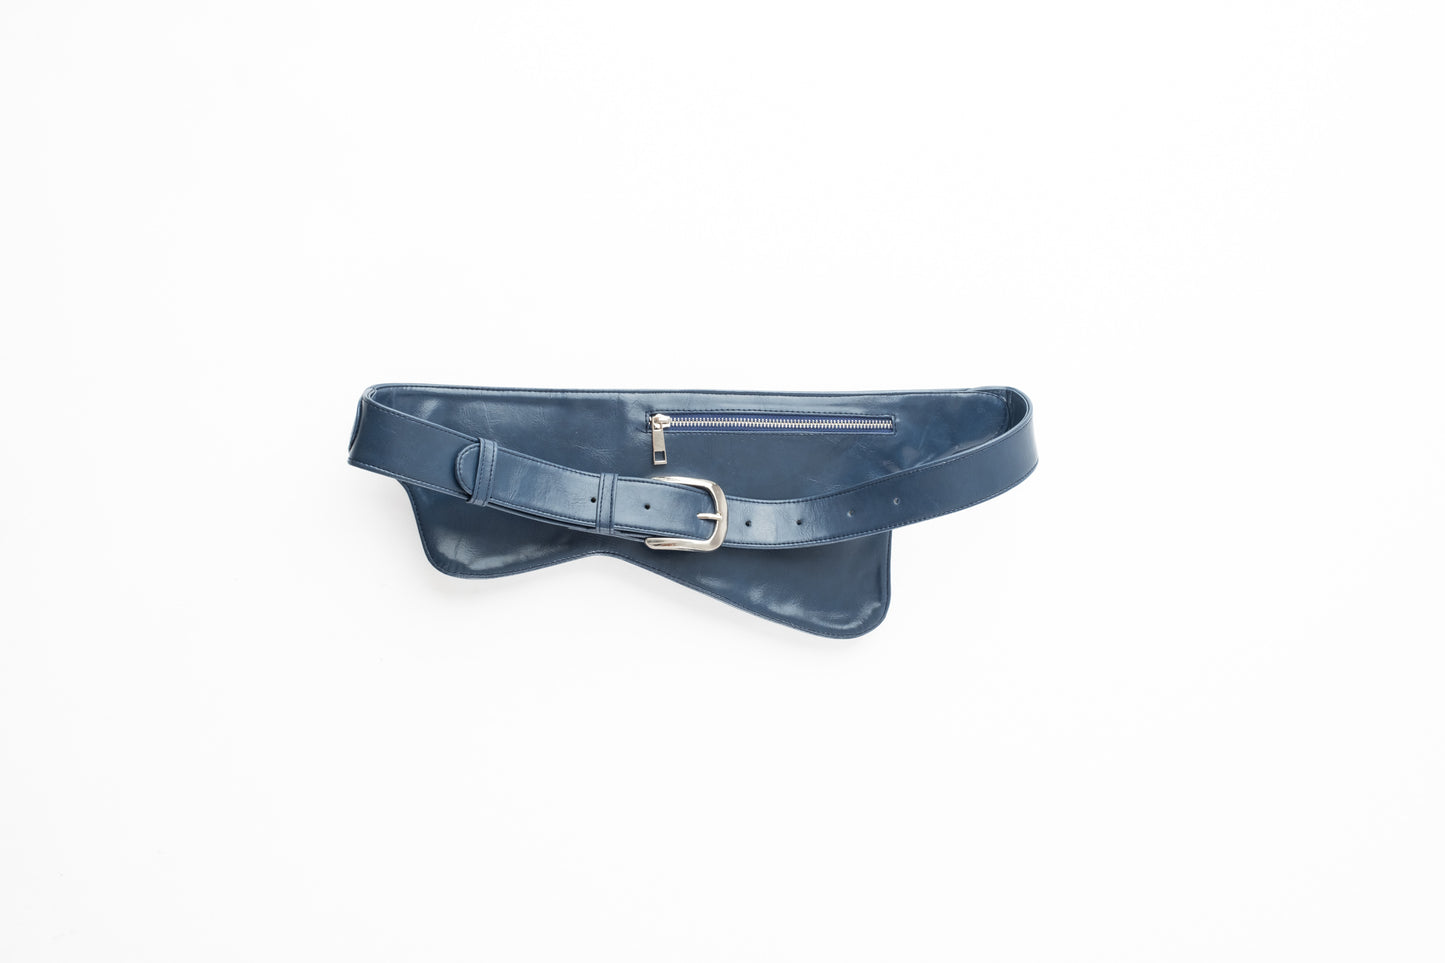 Miro Belt Bag in Navy Blue